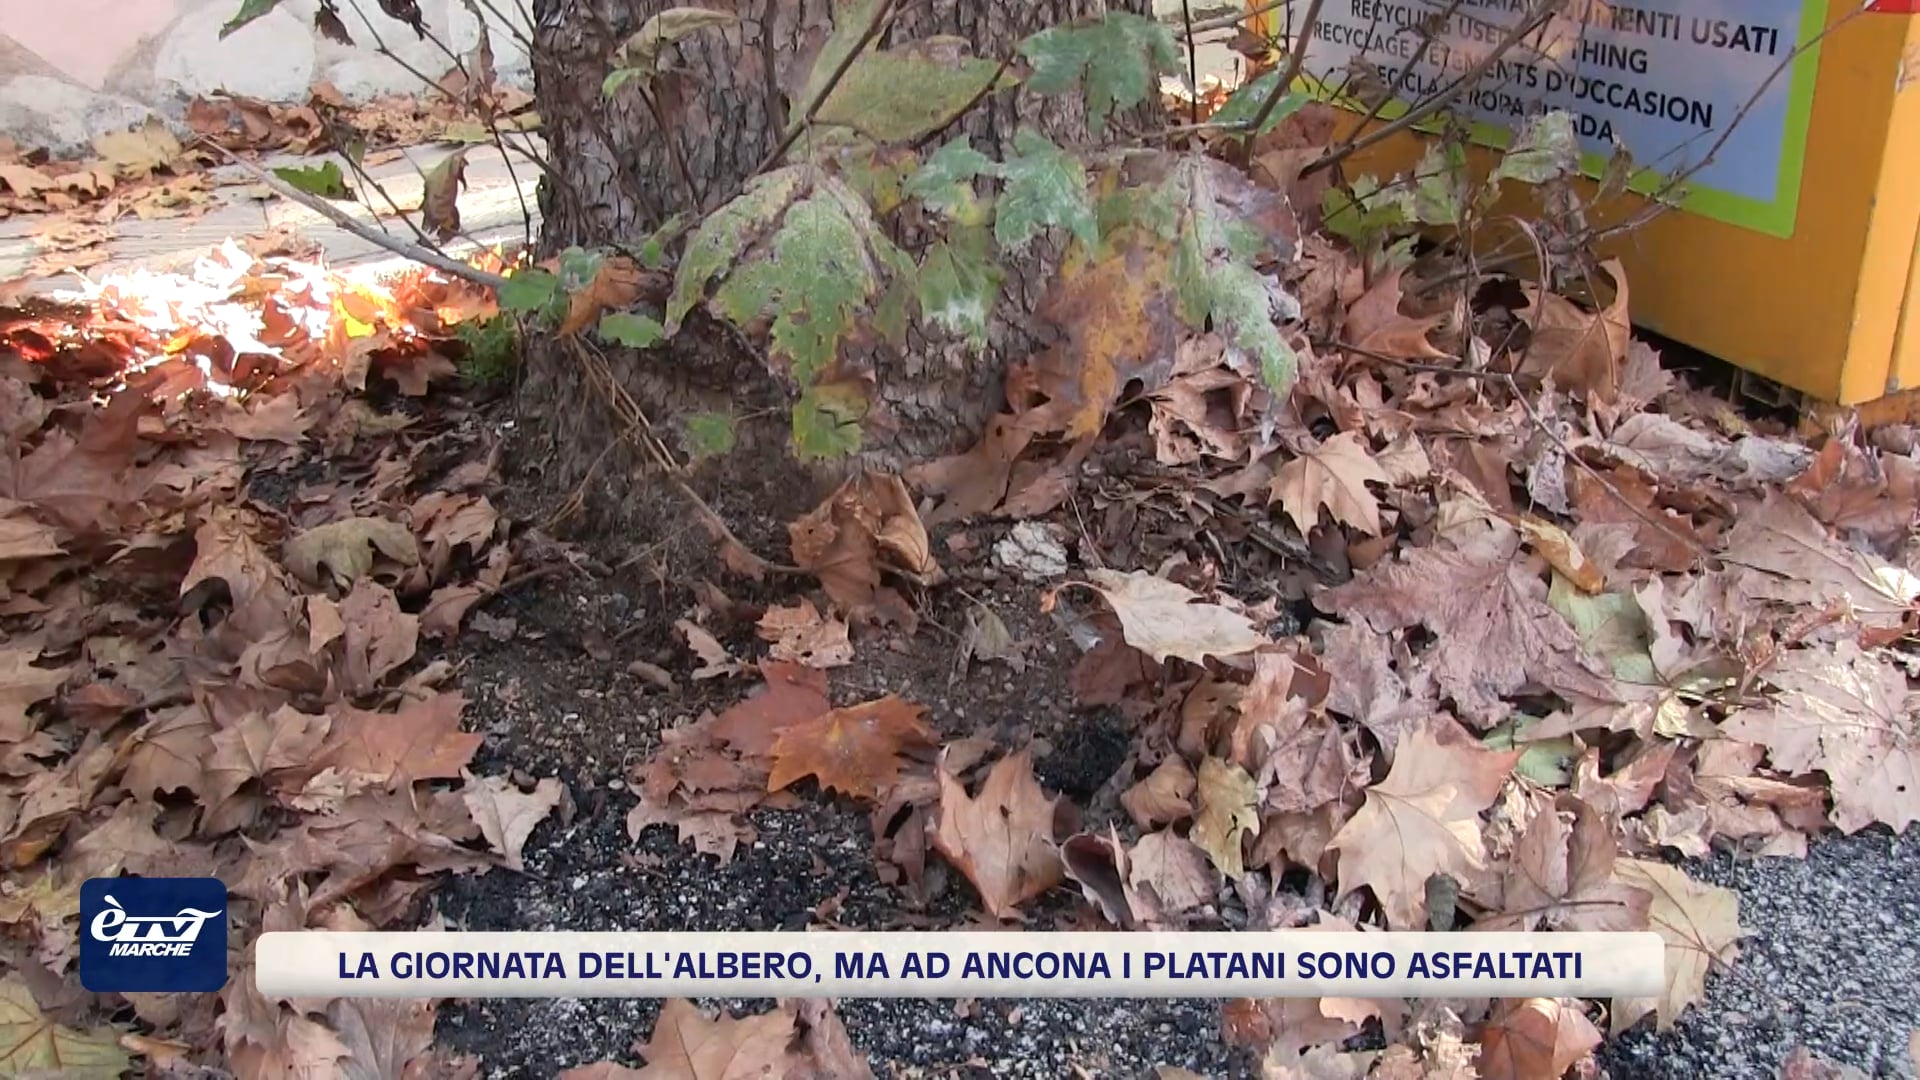 La Giornata dell'albero, ma ad Ancona i platani sono asfaltati - VIDEO